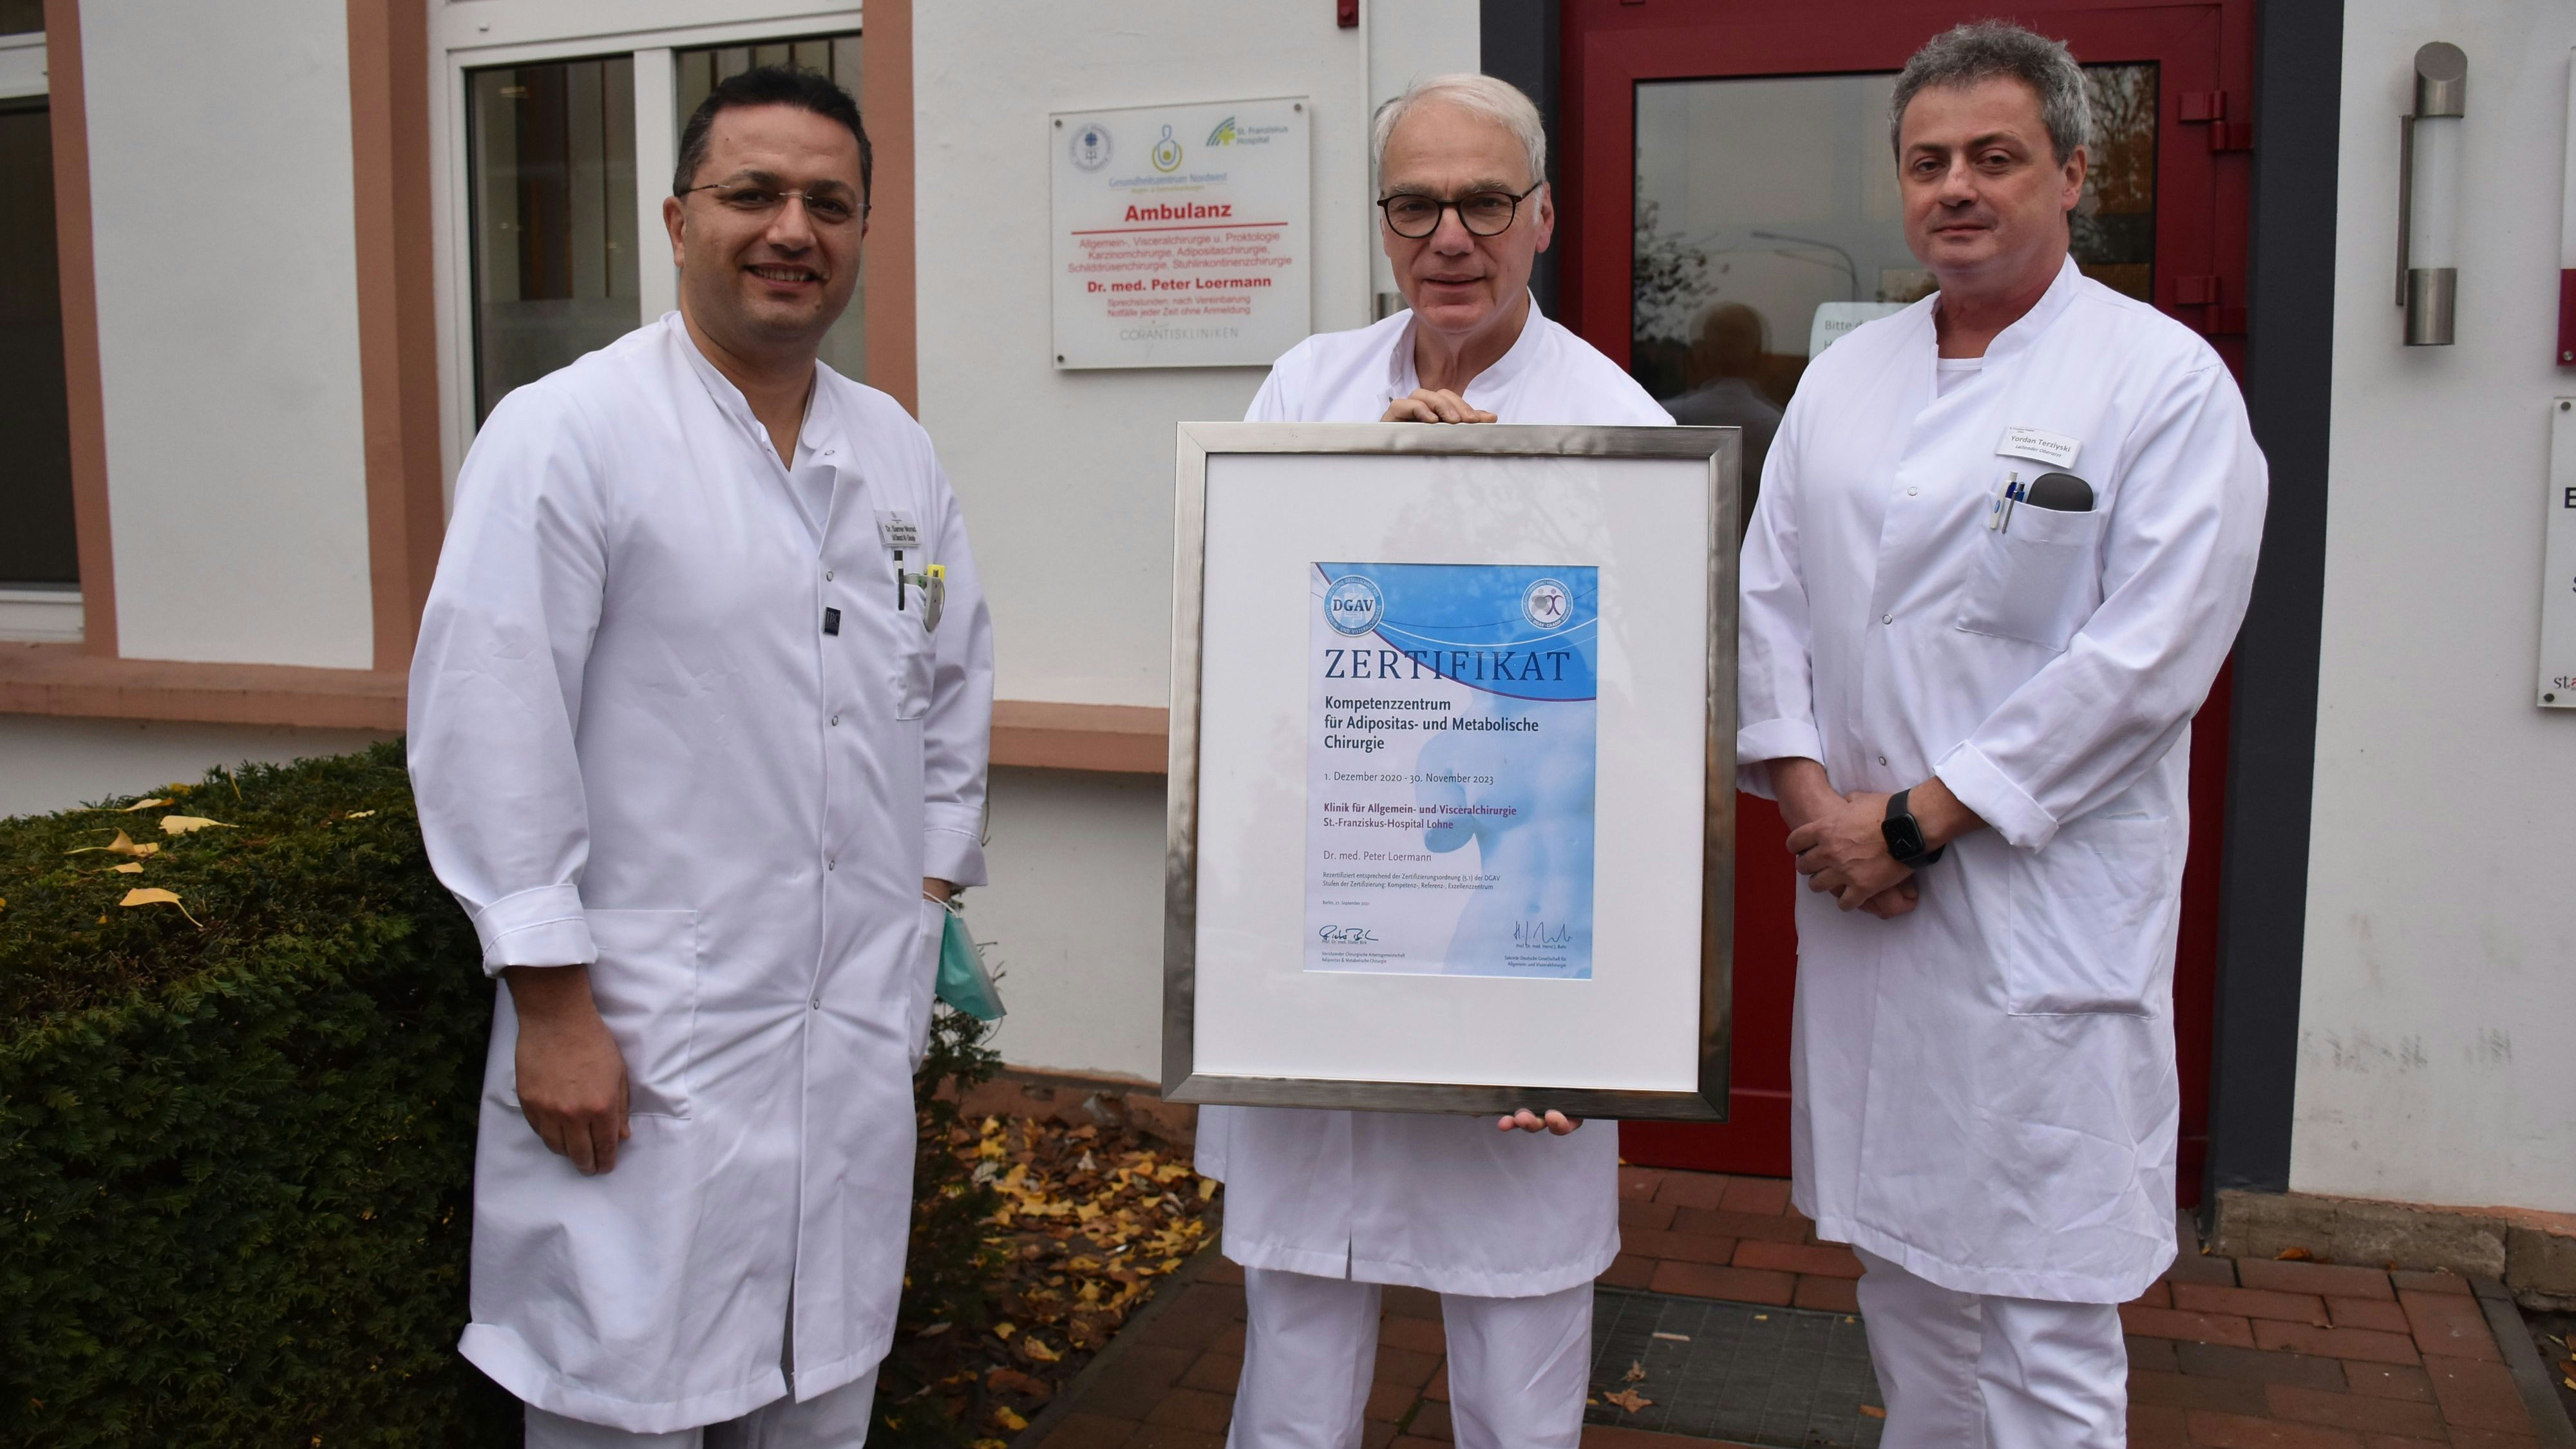 Sie sind stolz auf die hohe Qualität des Adipositaszentrums: Dr. Samer Morad (Leitender Oberarzt), Zentrumsleiter Dr. Peter Loermann und Yordan Terziyski (Leitender Oberarzt).&nbsp; &nbsp;Foto: Timphaus